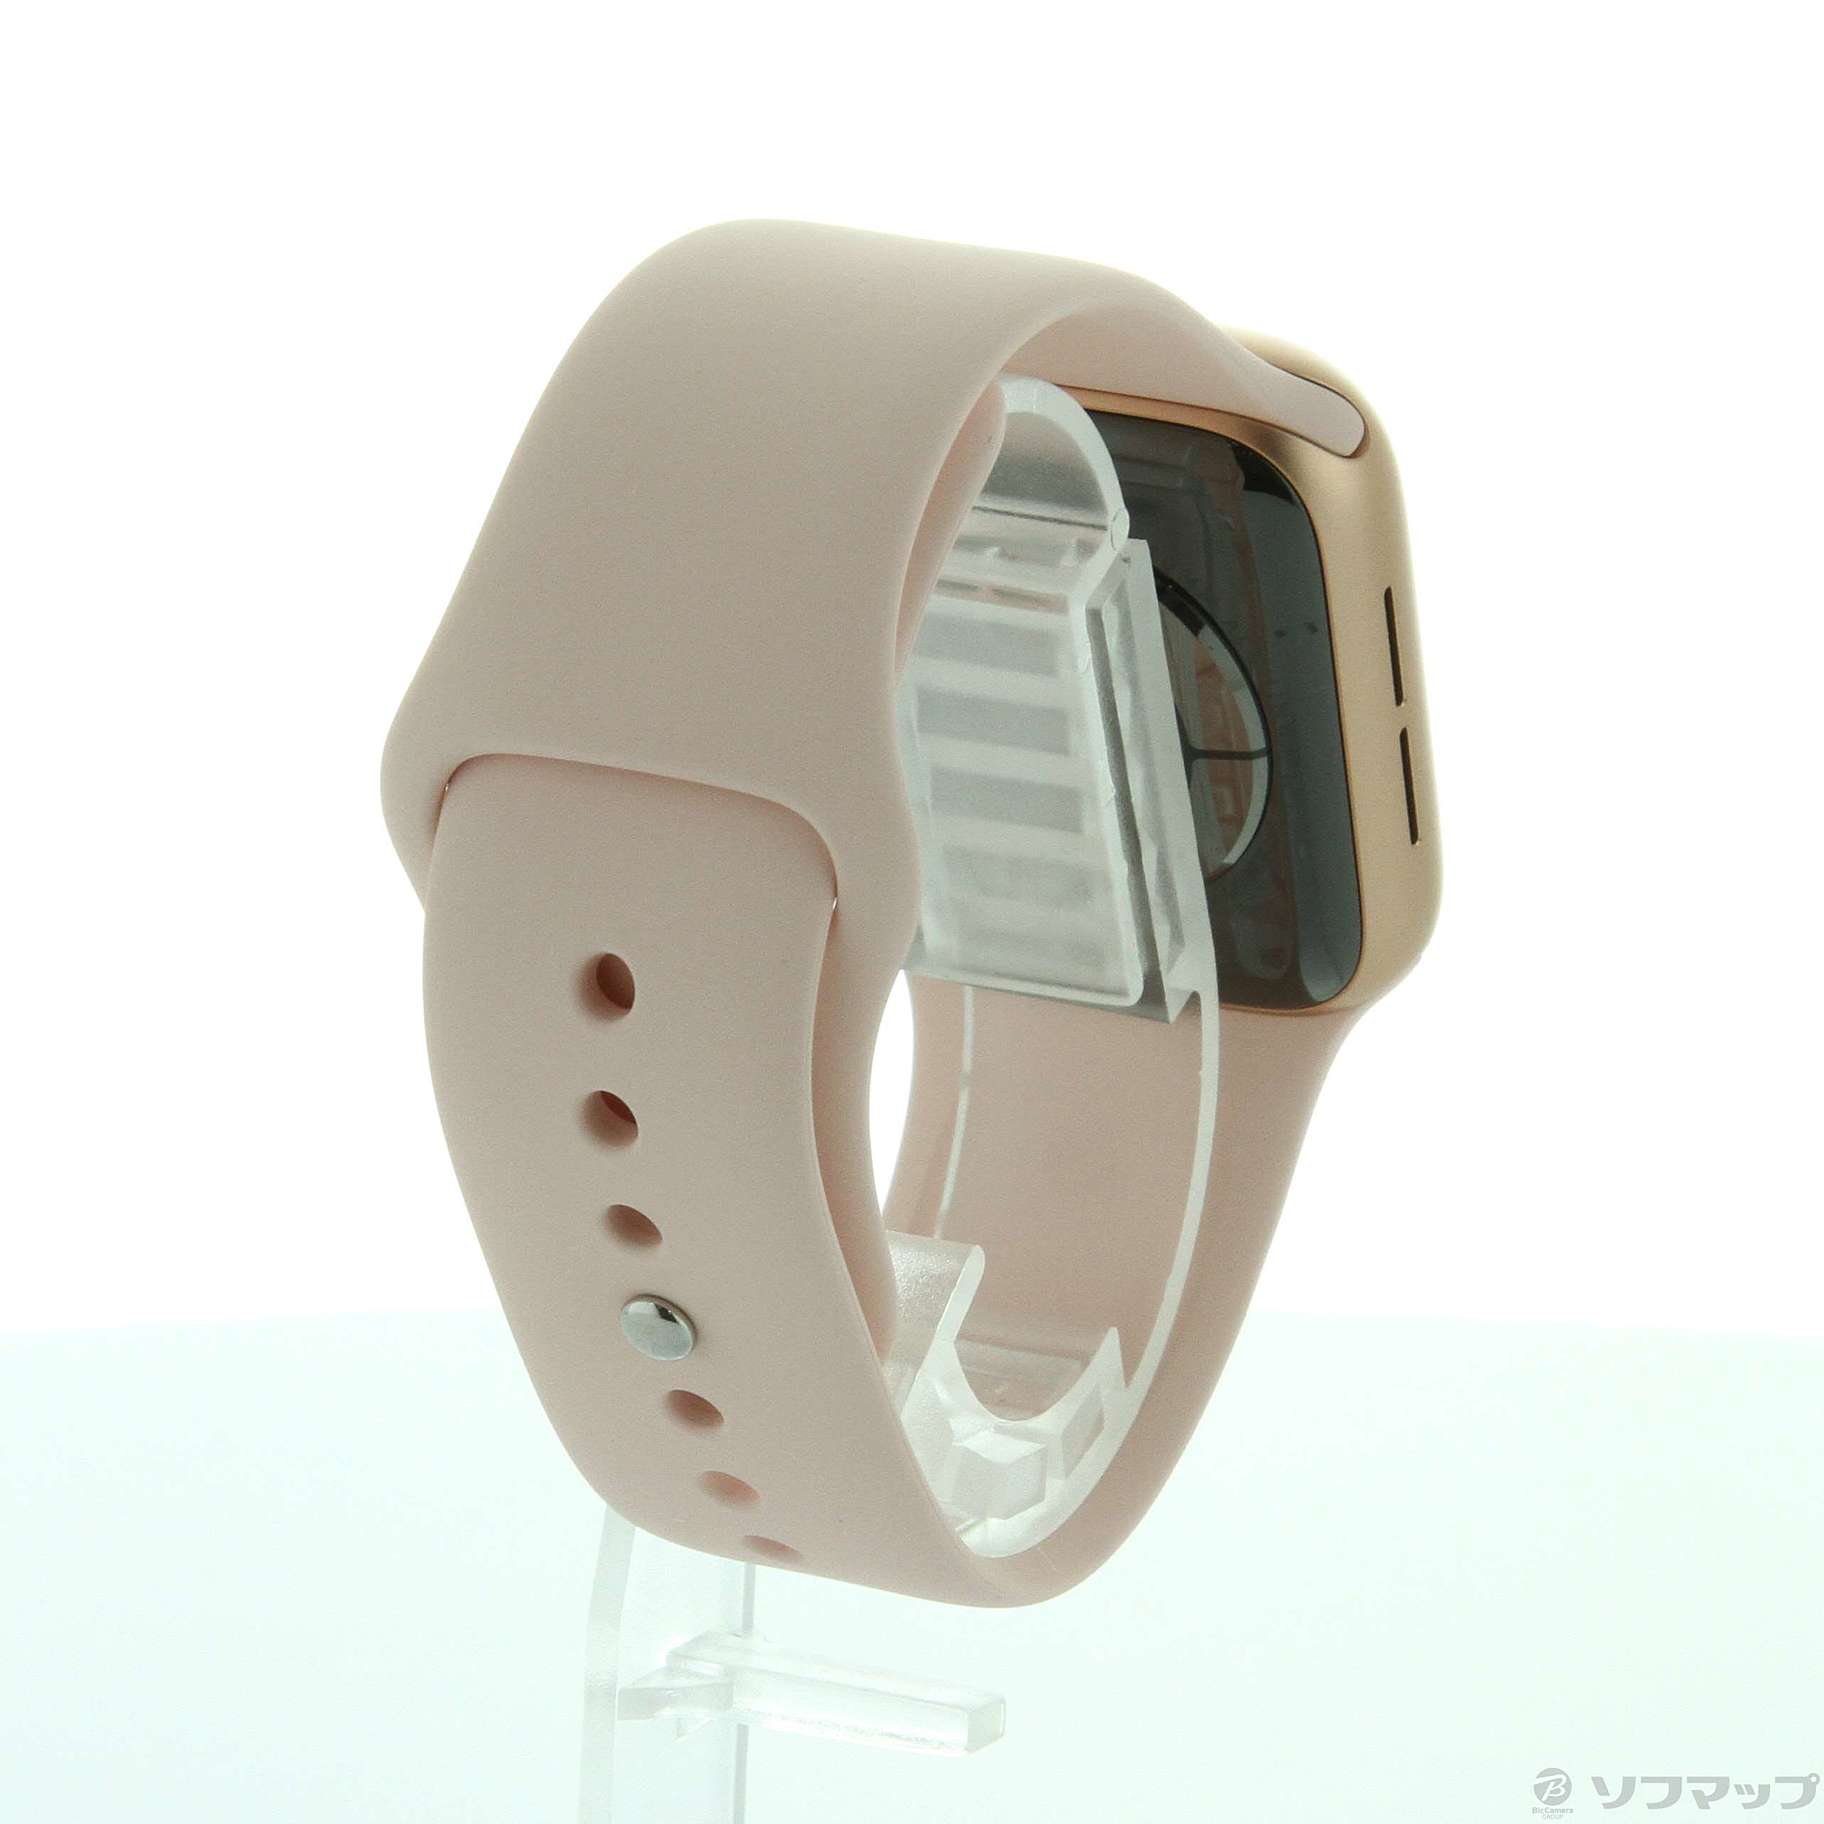 Applewatch6 / 40mm GPS  アルミニウム ピンク